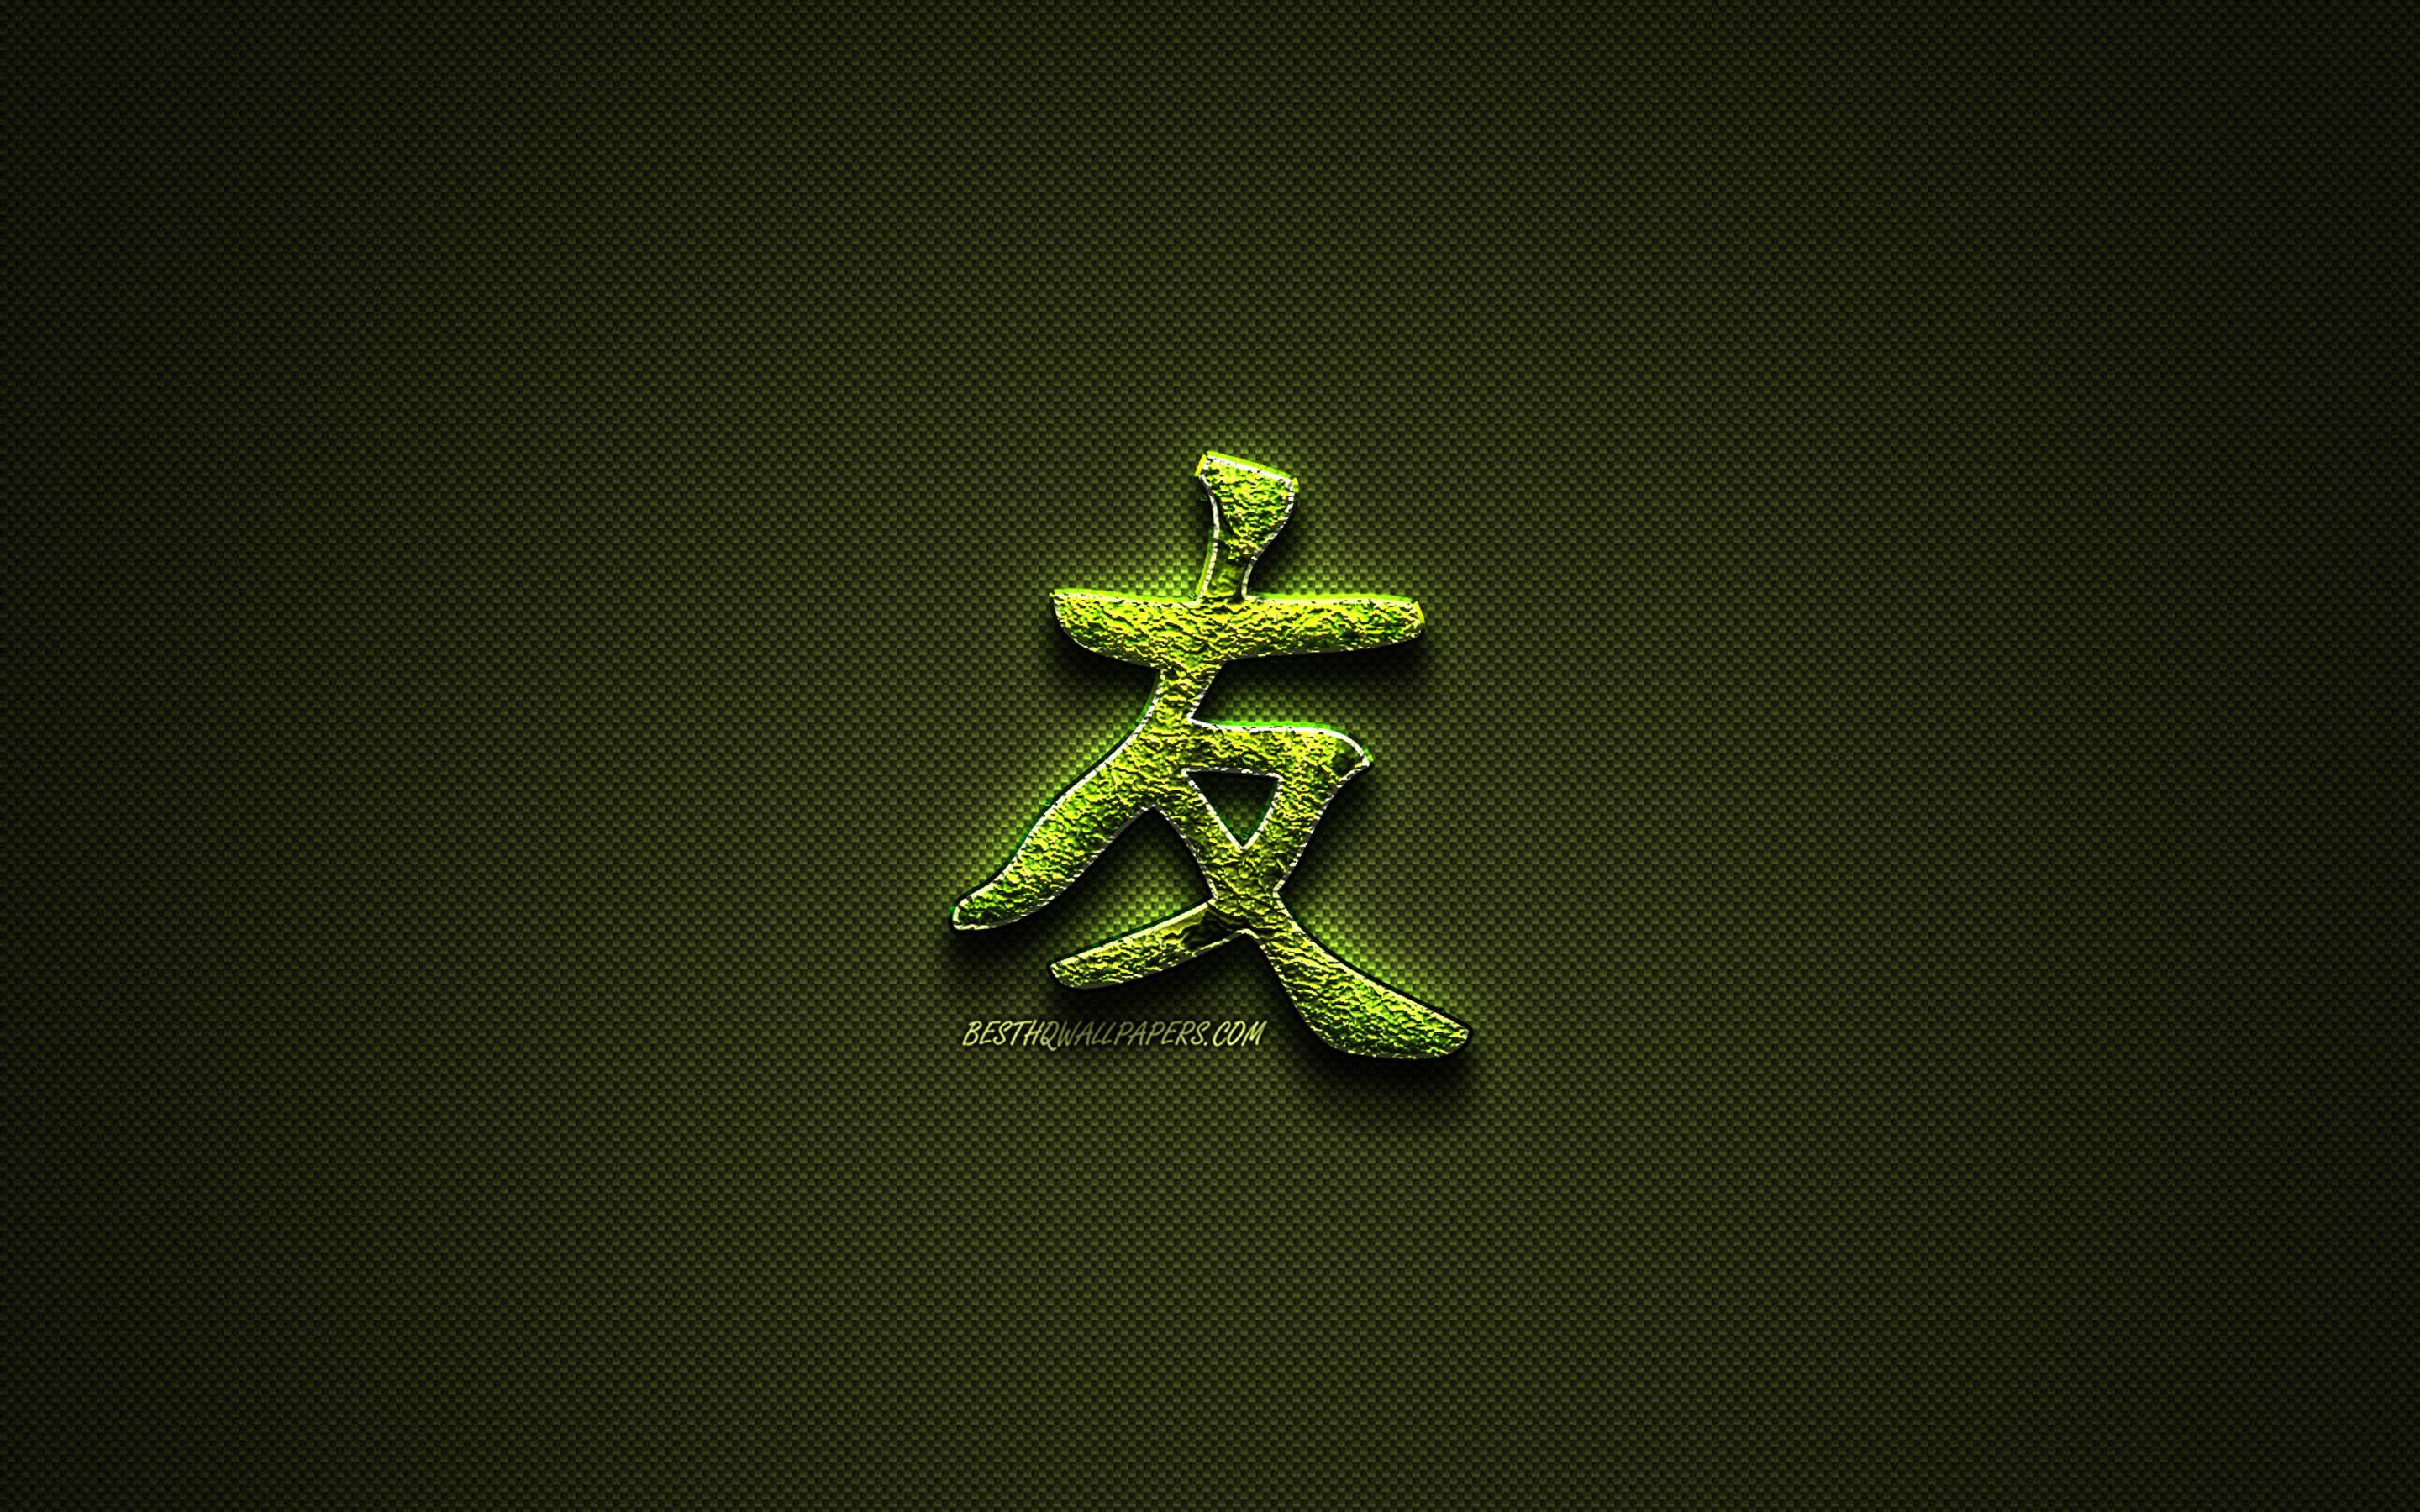 2880x1800 Tải xuống hình nền Bạn bè Chữ tượng hình chữ Hán, biểu tượng hoa màu xanh lá cây, Biểu tượng tiếng Nhật cho bạn bè, chữ tượng hình tiếng Nhật, Kanji, Biểu tượng tiếng Nhật cho bạn bè, biểu tượng cỏ, Bạn bè ký tự tiếng Nhật cho máy tính để bàn với độ phân giải 2880x1800.  Hình ảnh HD chất lượng cao